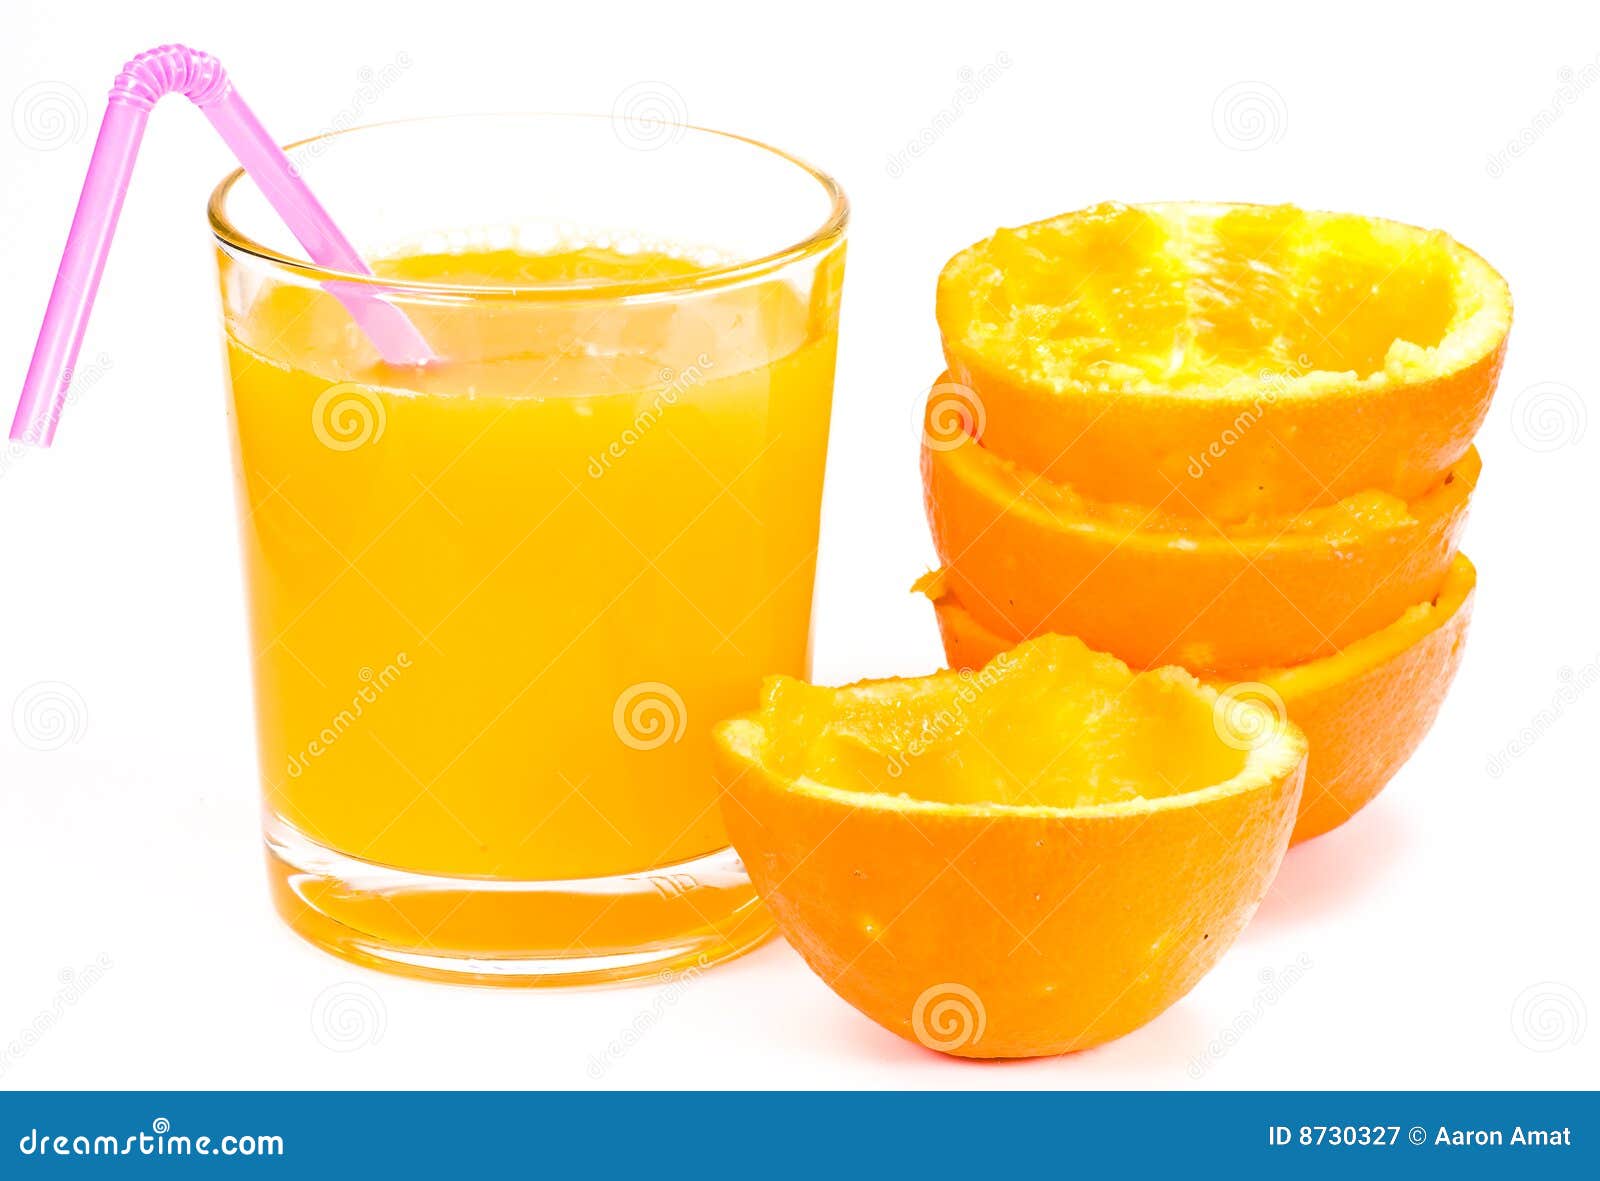 How To Make Fresh Orange Juice Step By Step Typical Of Pekanbaru City